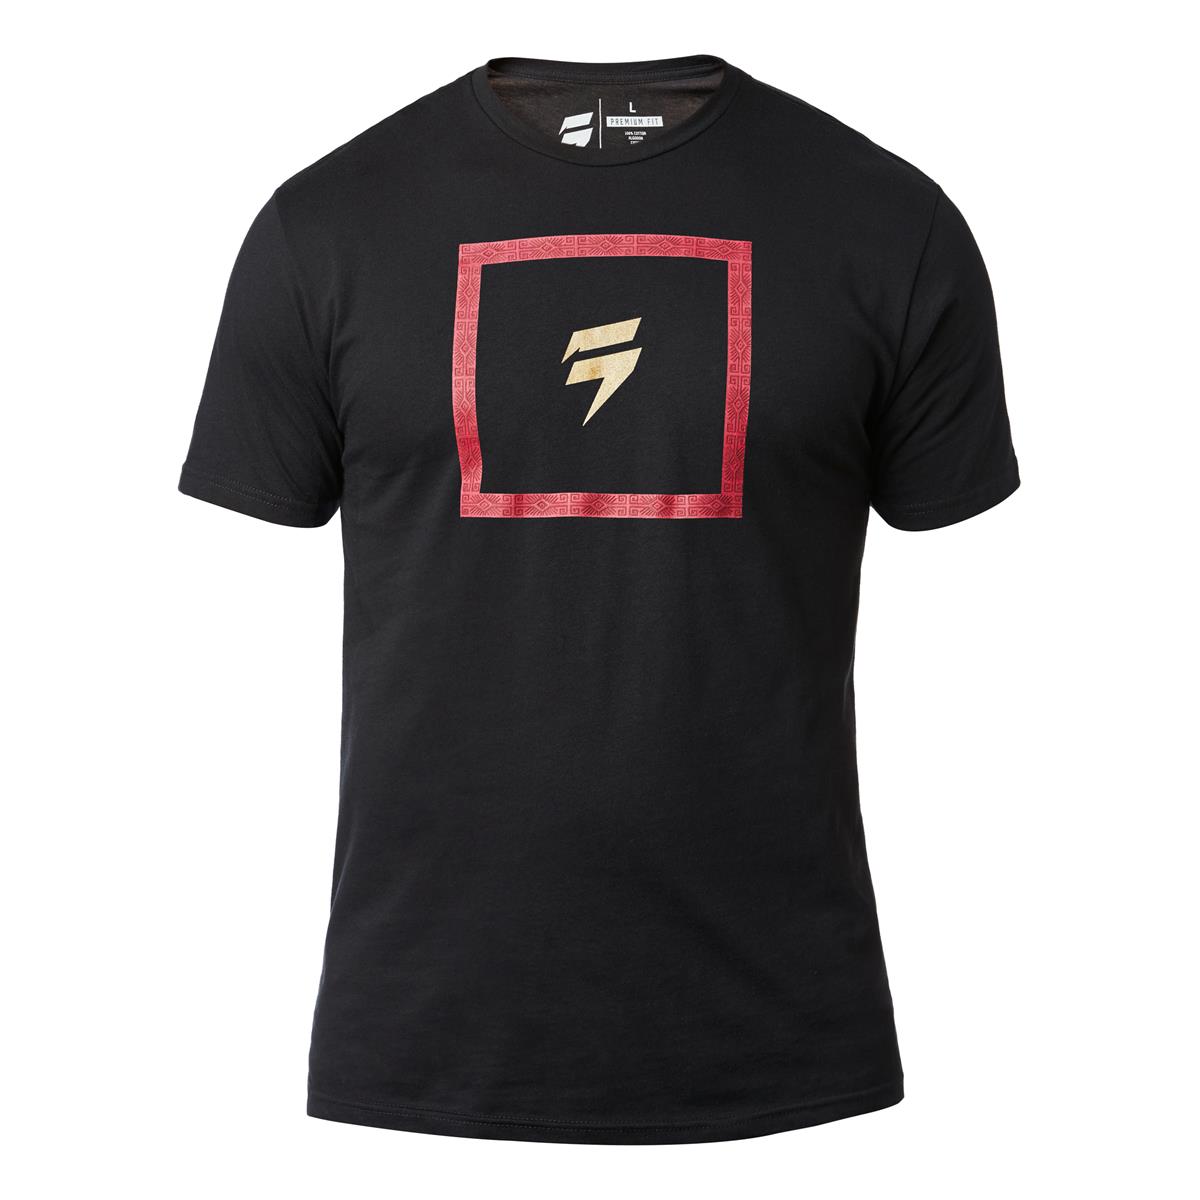 Shift T-Shirt 3lack Label Black - Special Edition Muerte